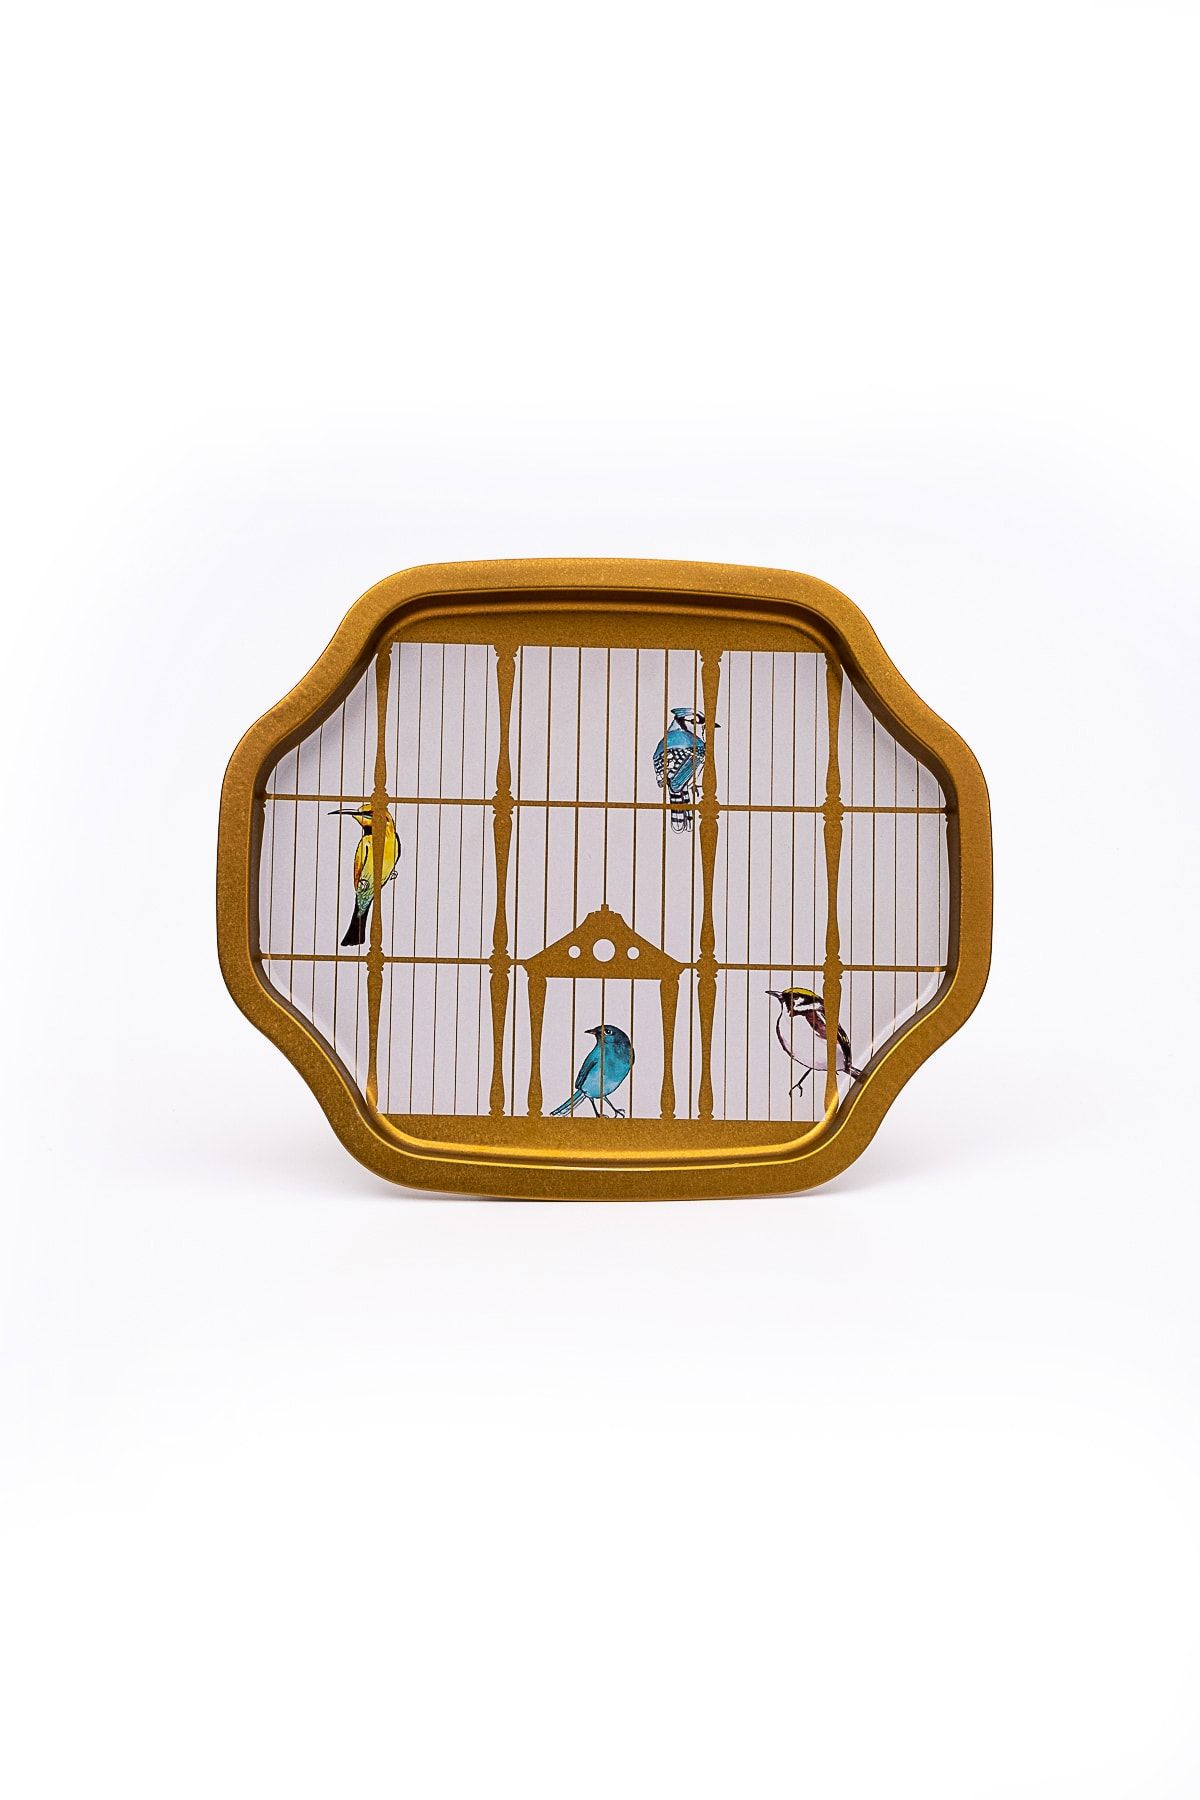 Bird Cage Desenli Büyük Sekizgen Metal Tepsi, 27 x 33 cm